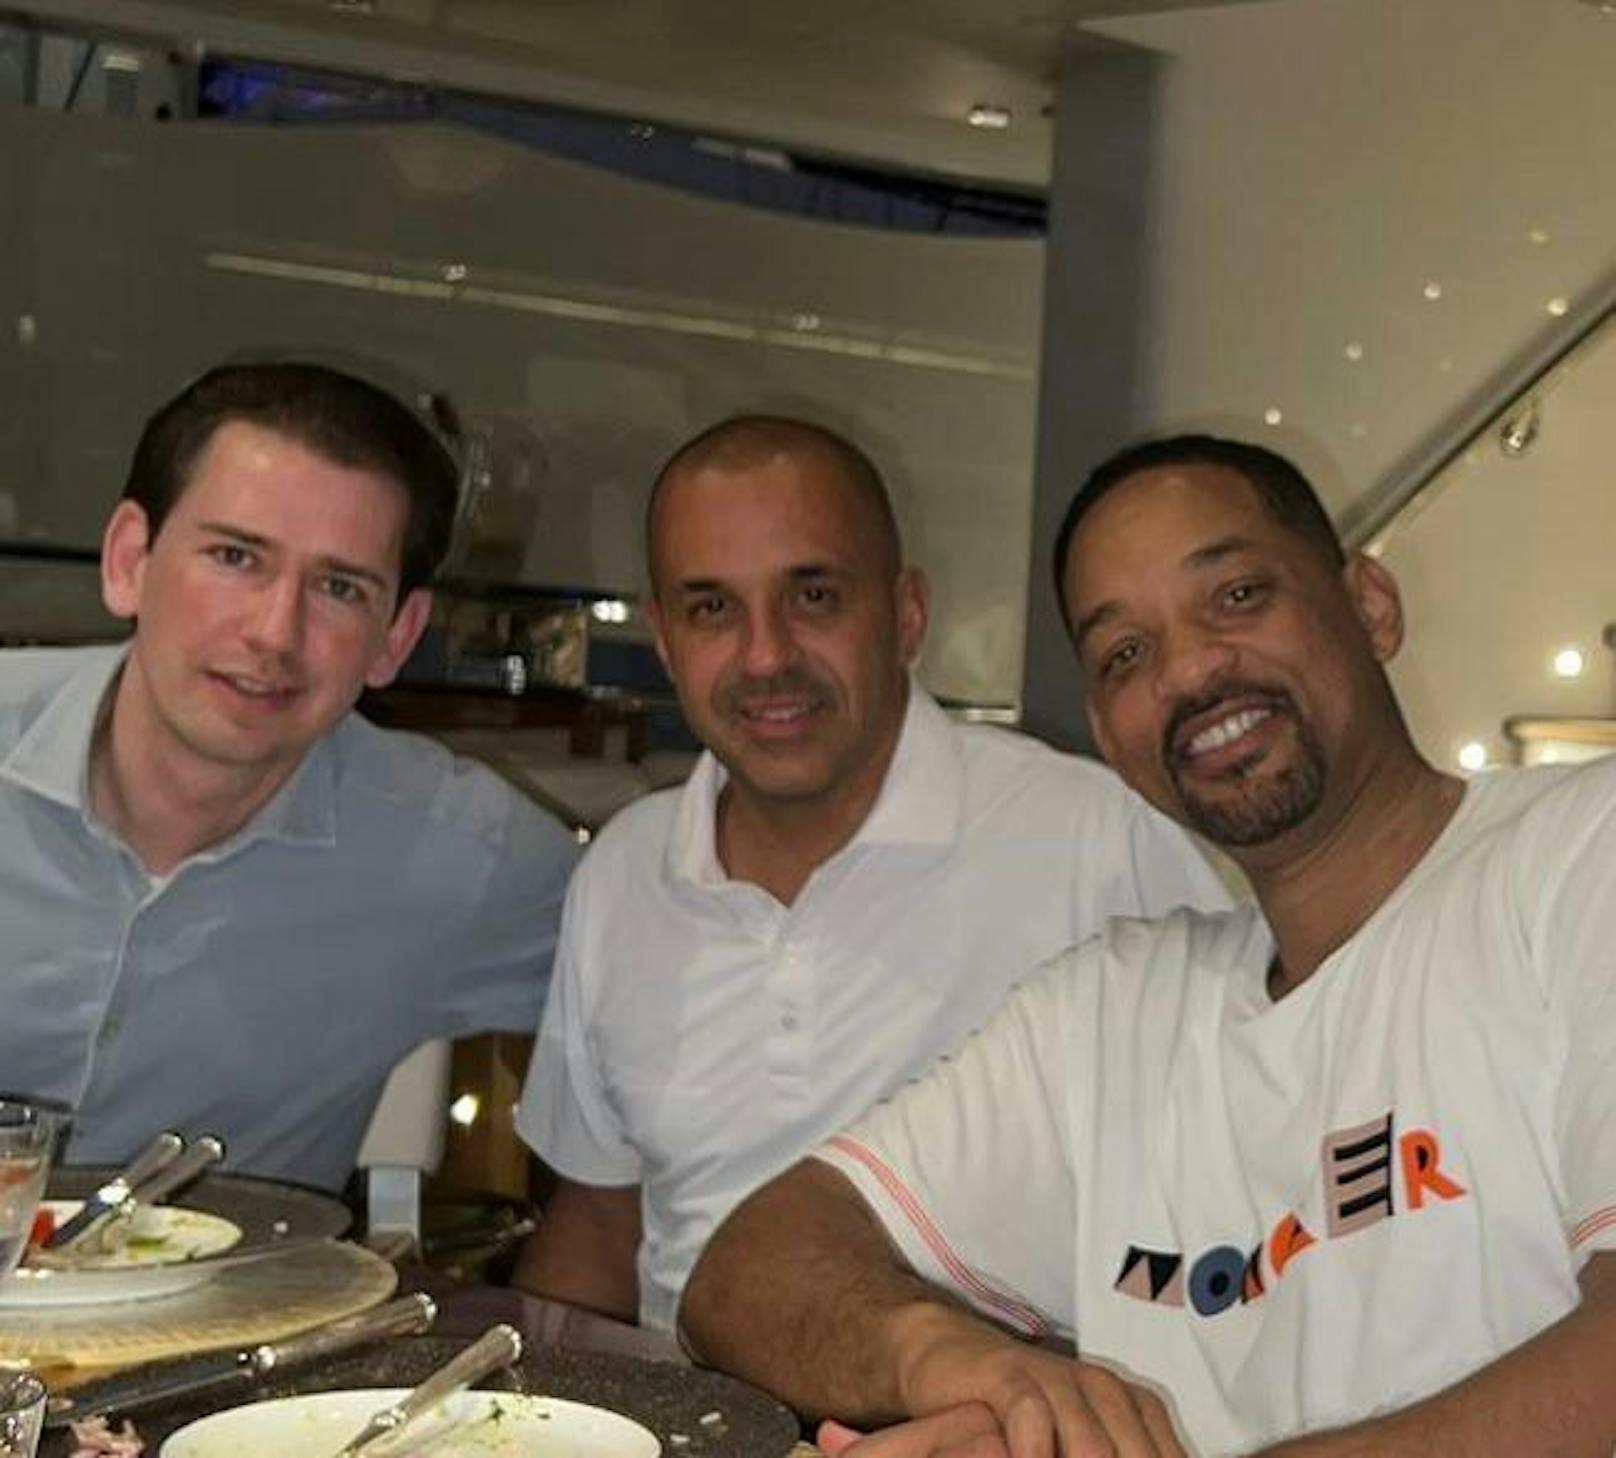 Ex-Kanzler Sebastian Kurz besuchte am Wochenende den Formel-1-GP in Jeddah und traf dort Hollywood-Star Will Smith.